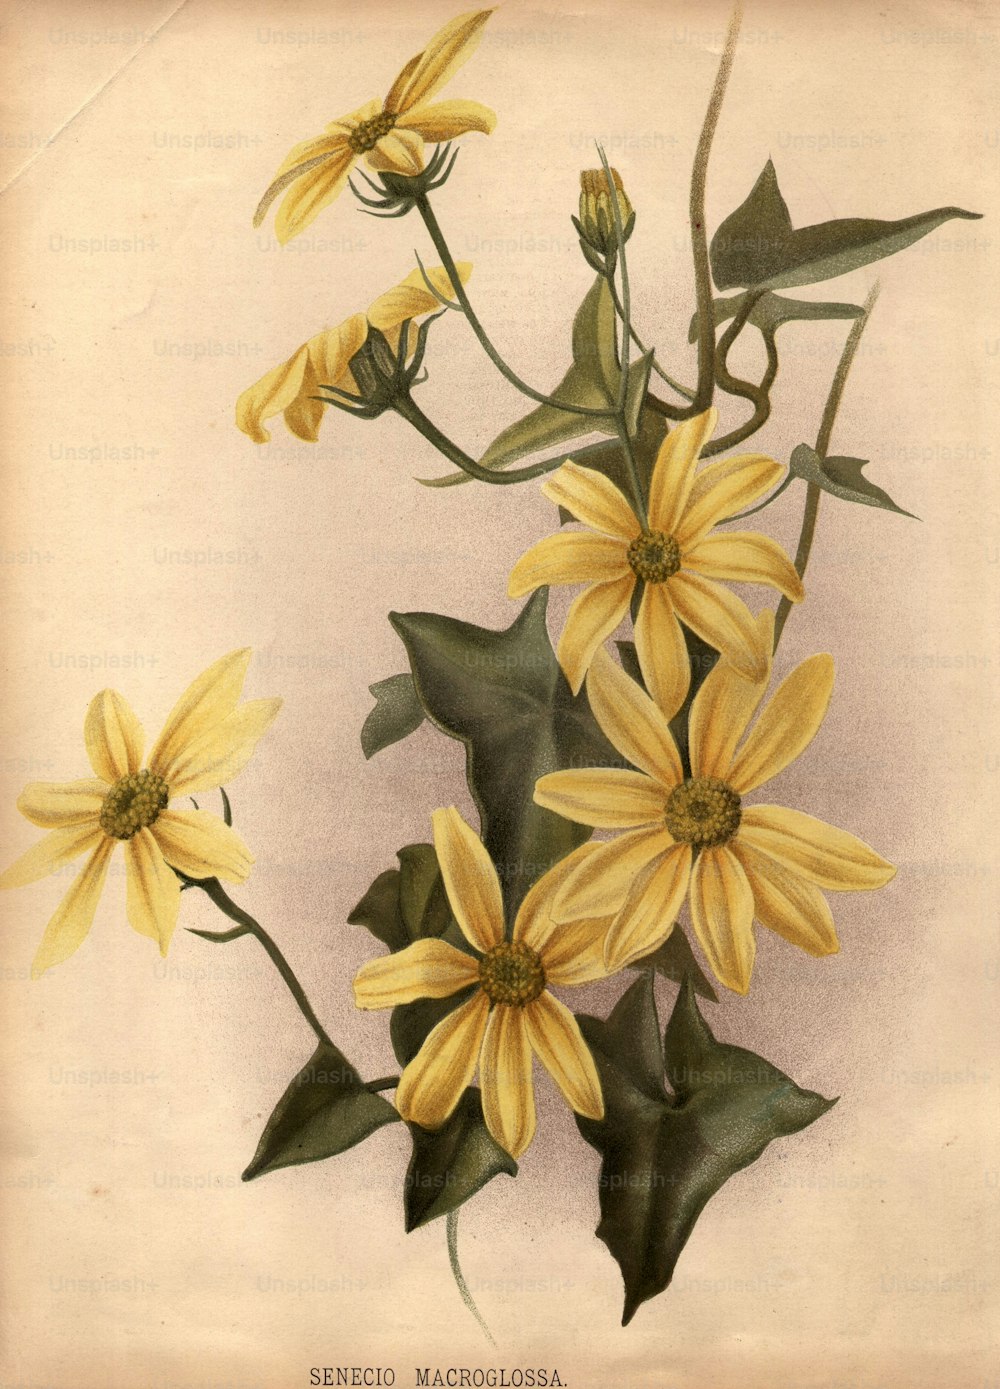 circa 1800:  The yellow flowers of senecio macroglossa.  (Photo by Edward Gooch/Edward Gooch/Getty Images)